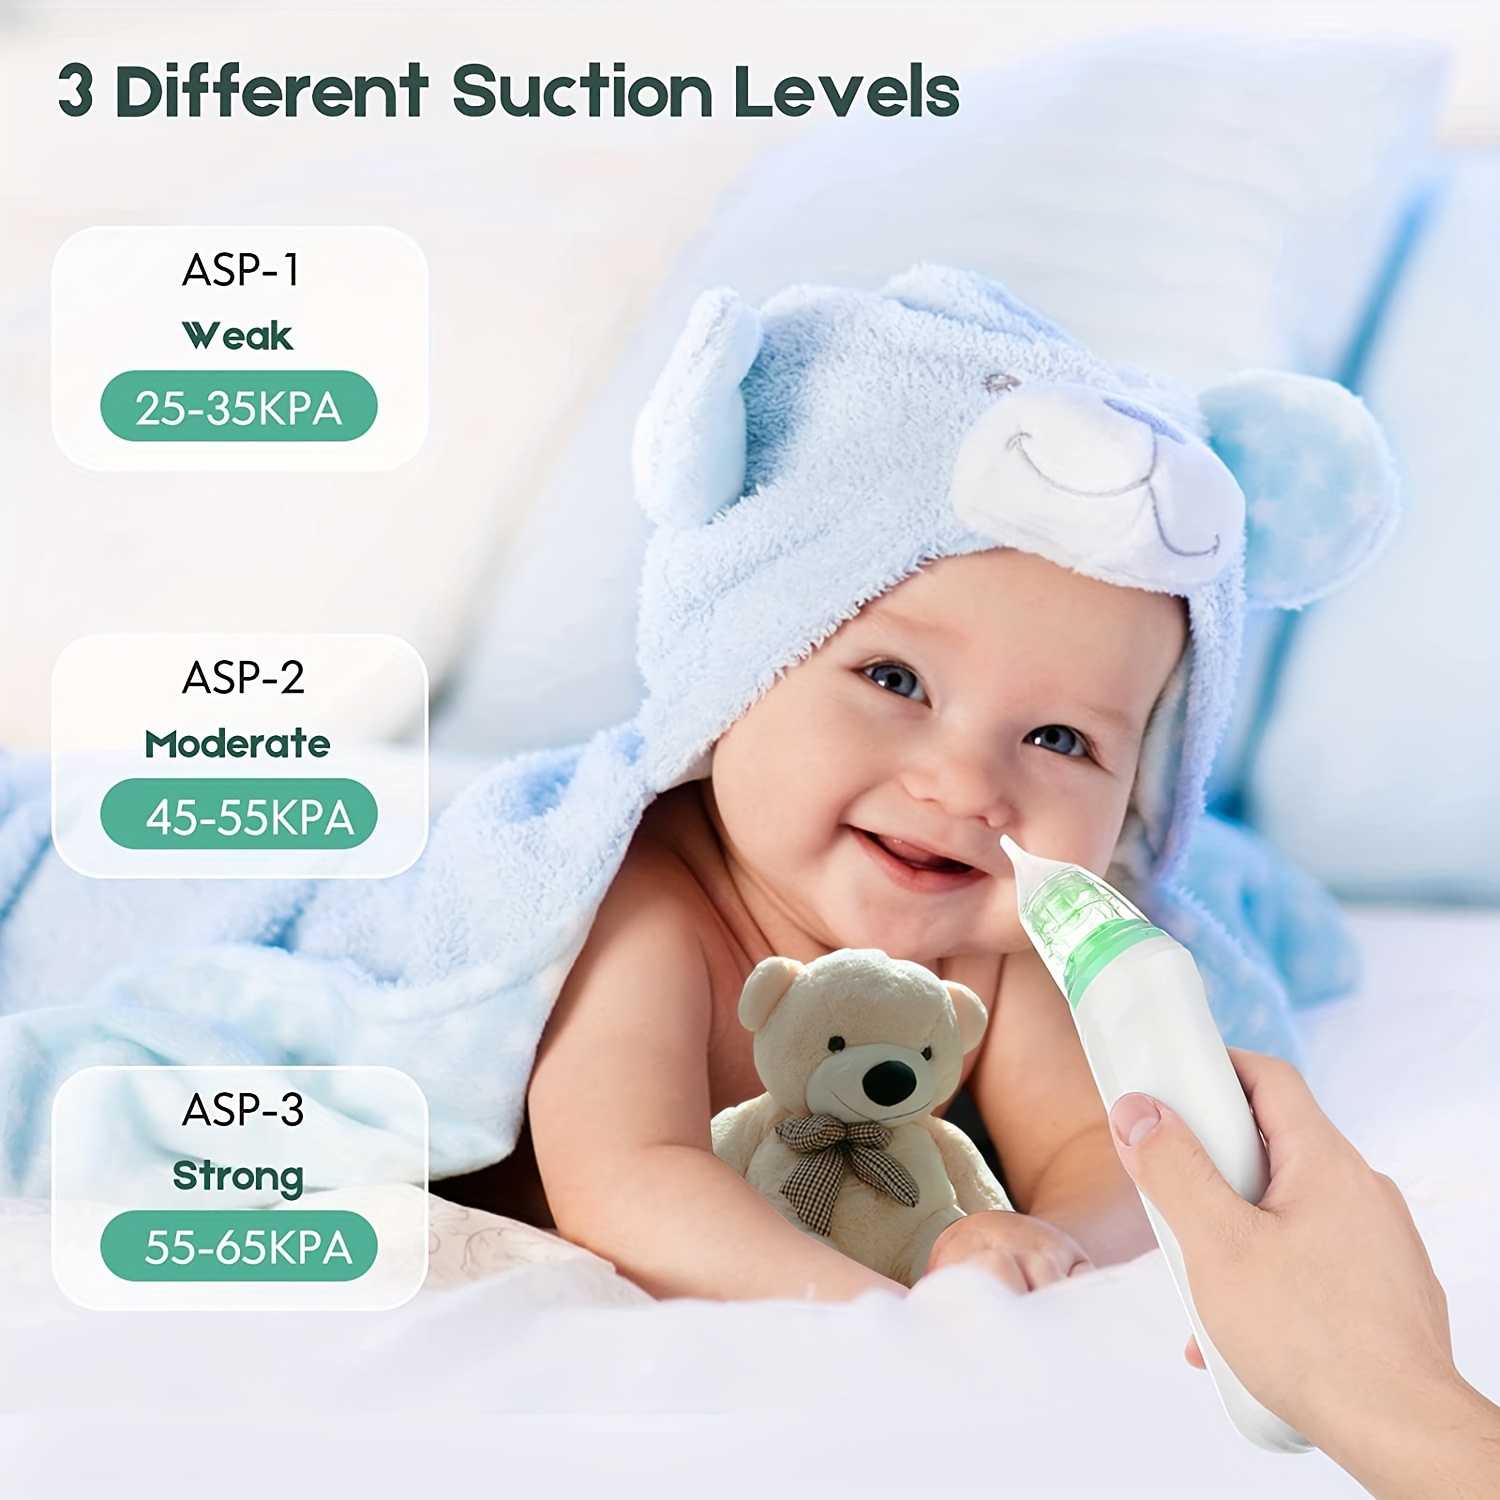 Aspirateur nasal pour bébé - Nettoyeur de nez et aspirateur nasal